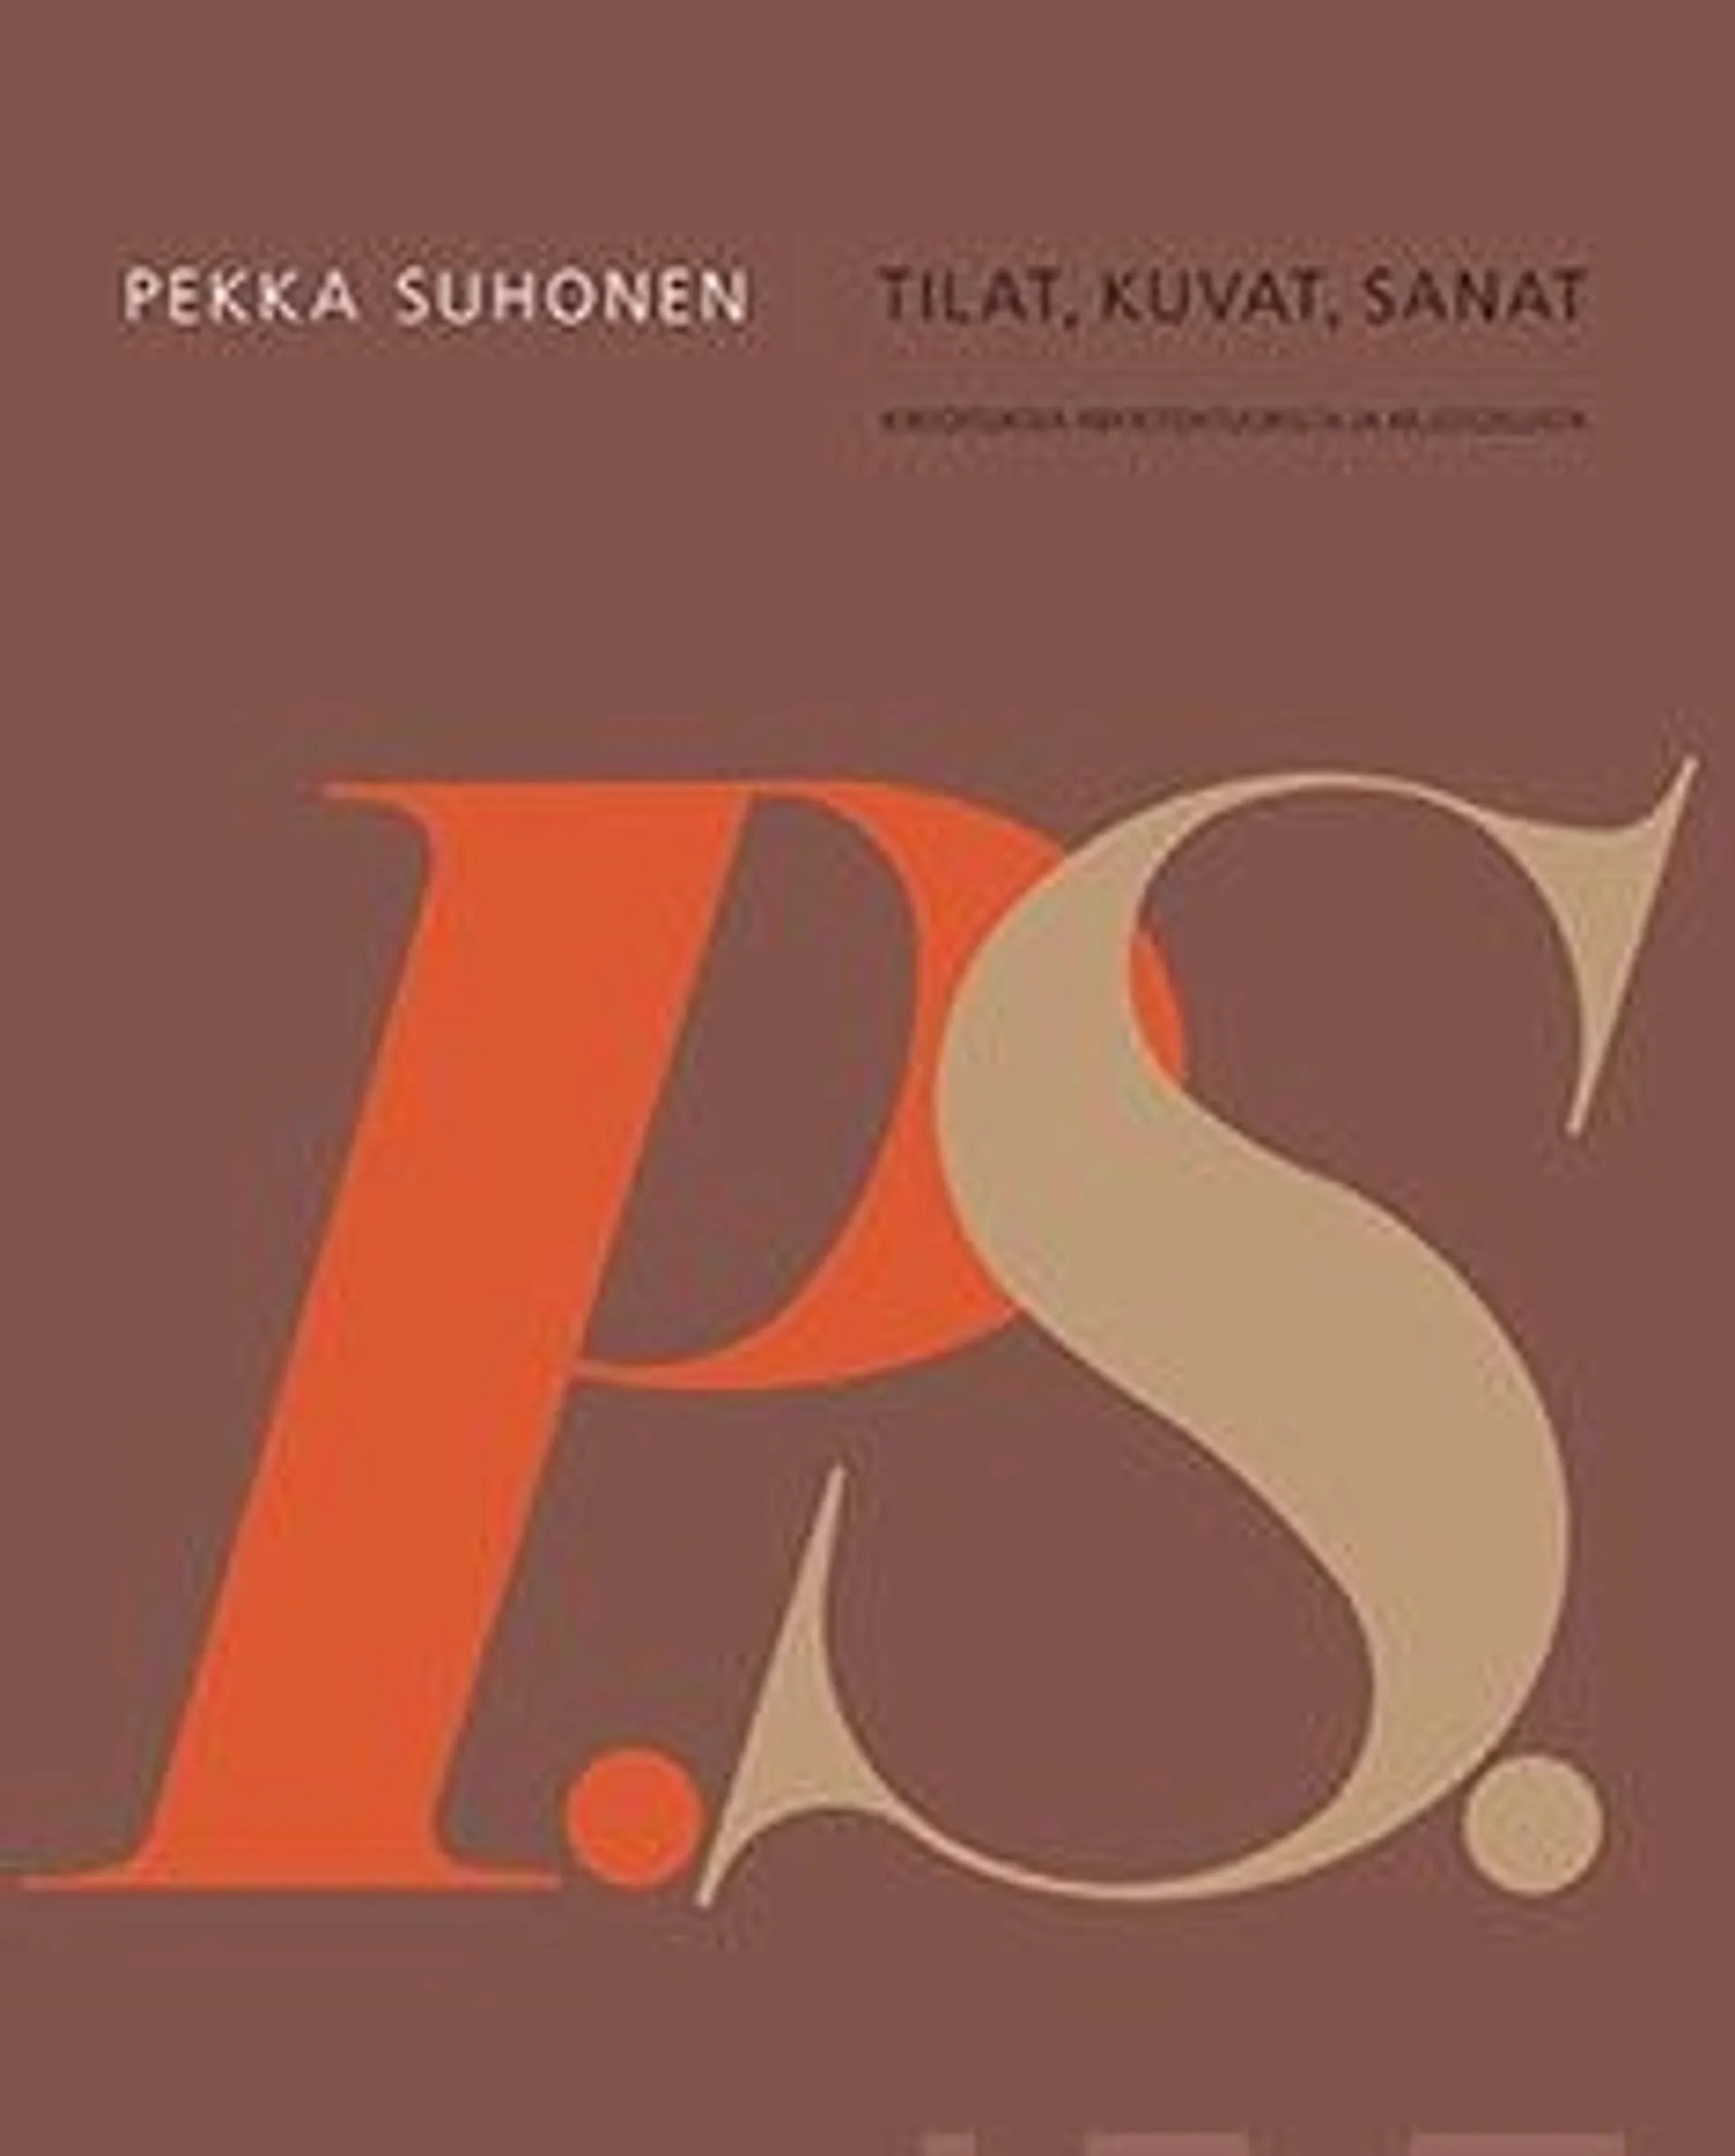 Pallasmaa, Pekka Suhonen - tilat, kuvat, sanat - Kirjoituksia arkkitehtuurista ja muotoilusta